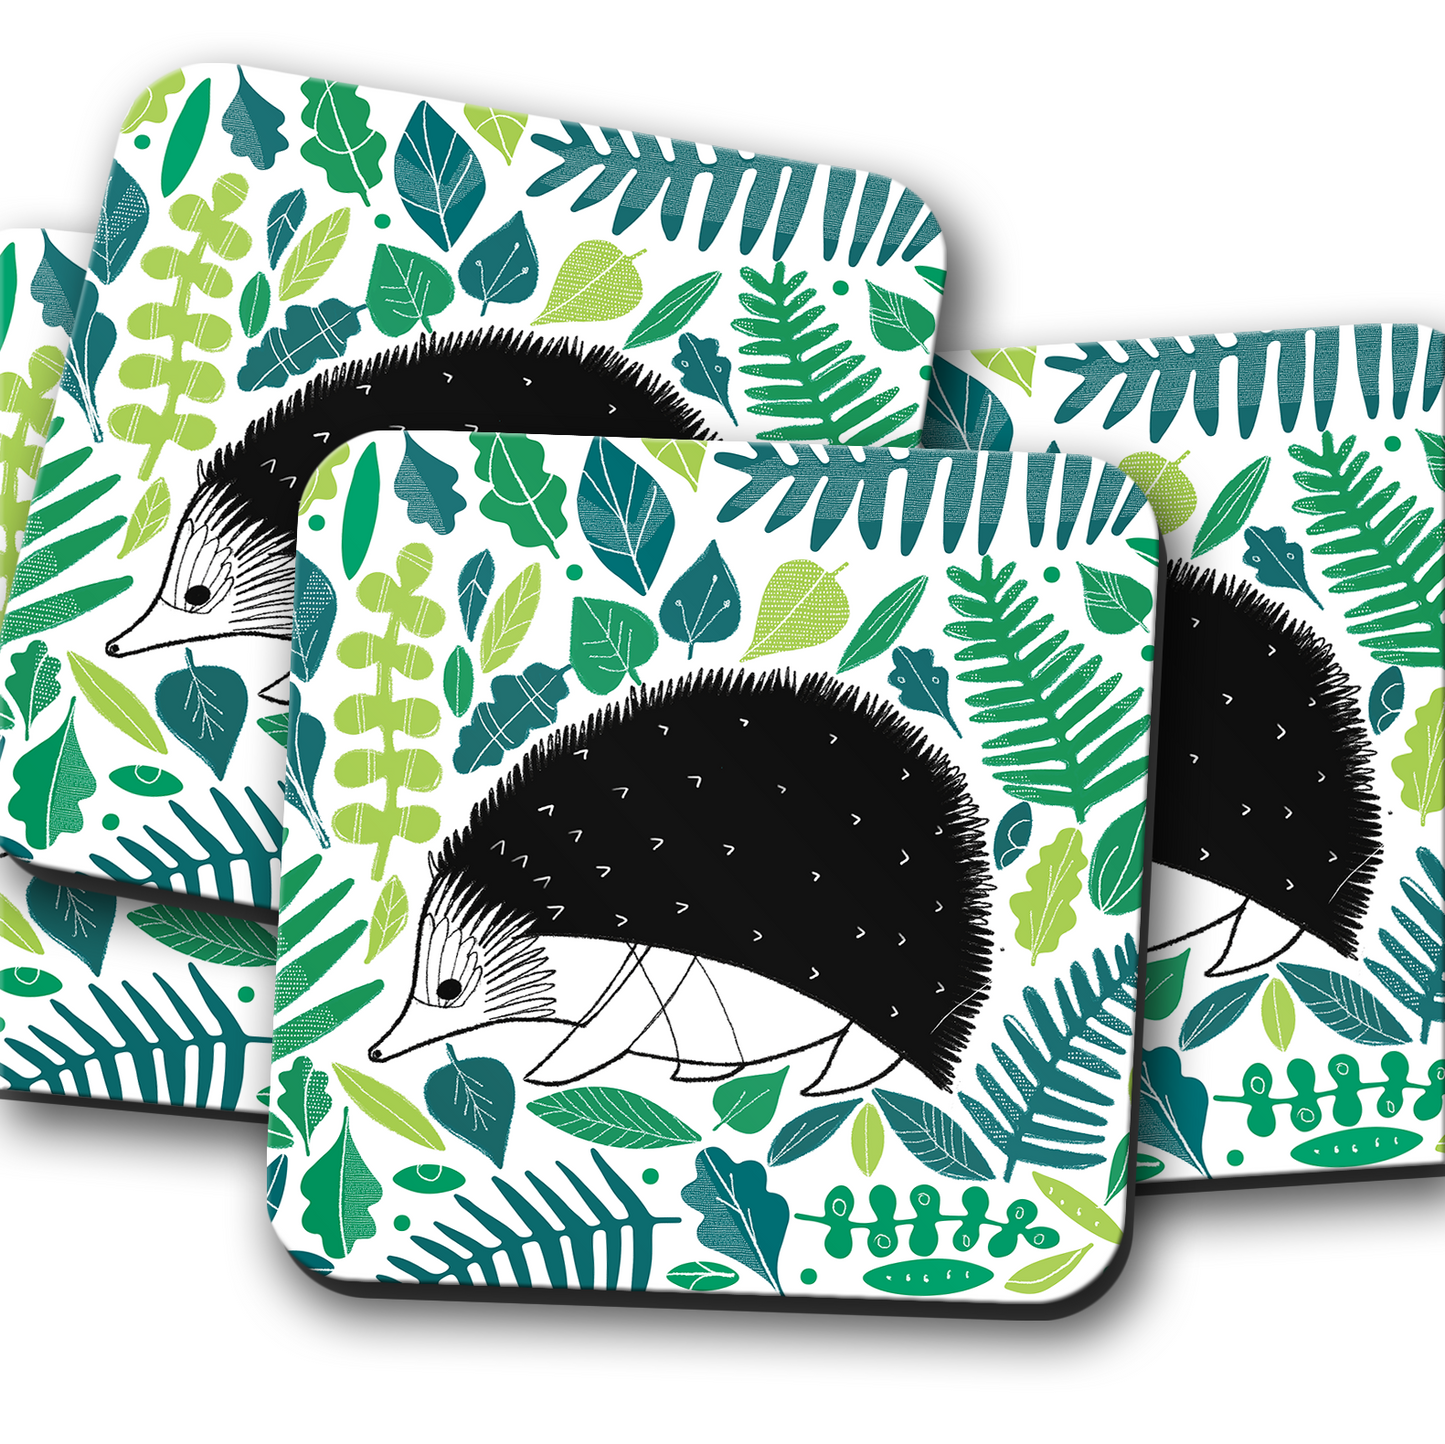 Hedgehog Coaster Set